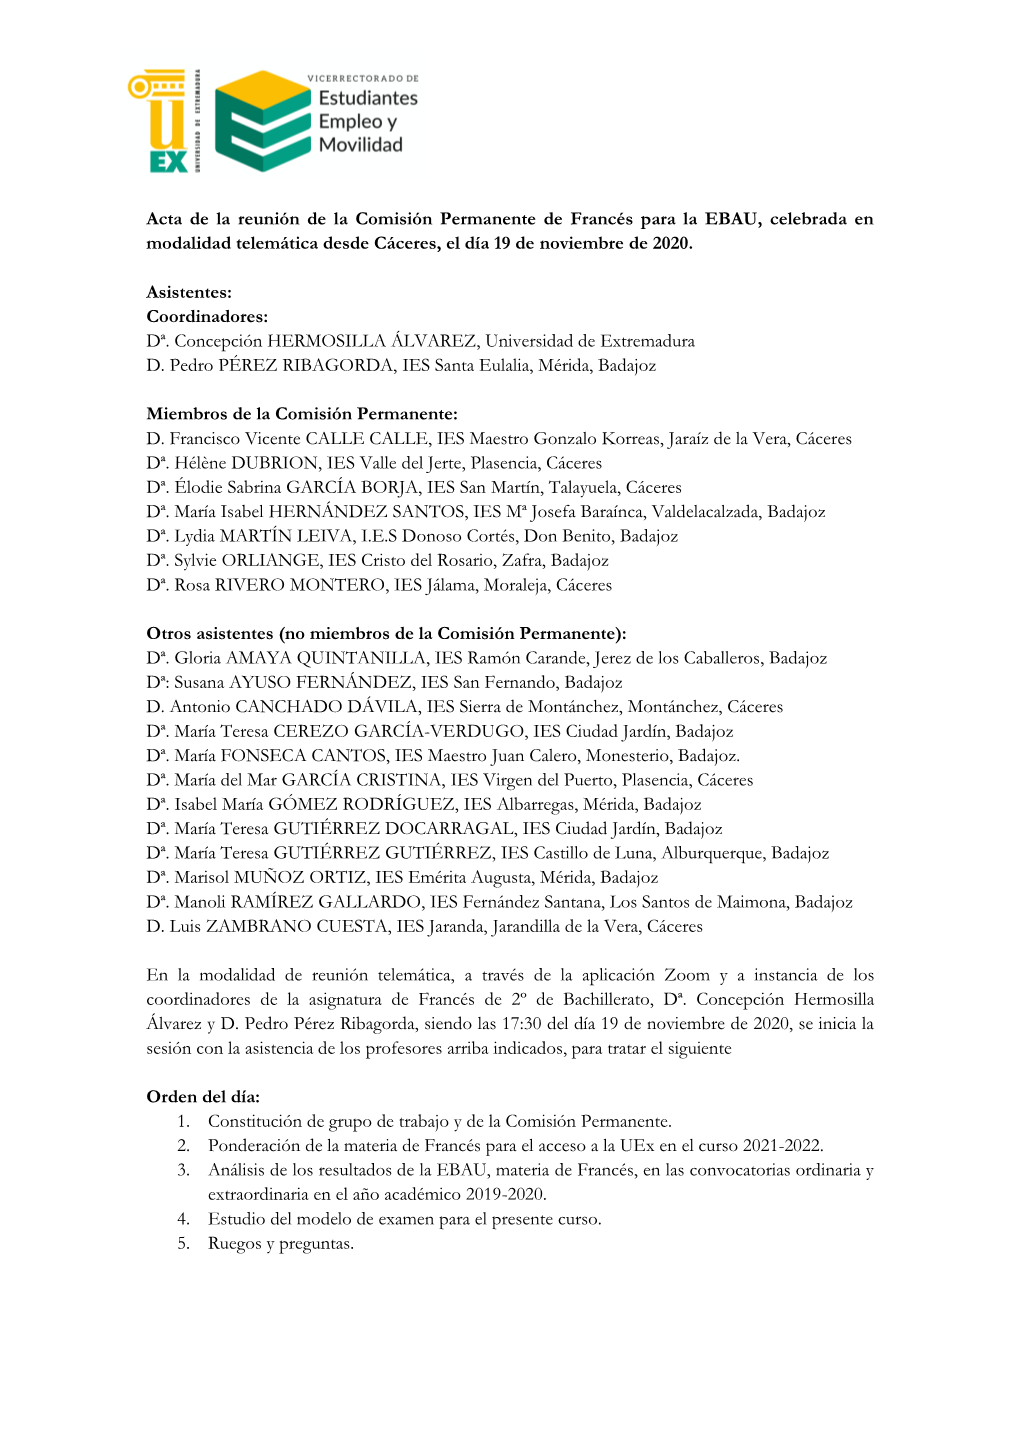 Acta De La Reunión De La Comisión Permanente De Francés Para La EBAU, Celebrada En Modalidad Telemática Desde Cáceres, El Día 19 De Noviembre De 2020